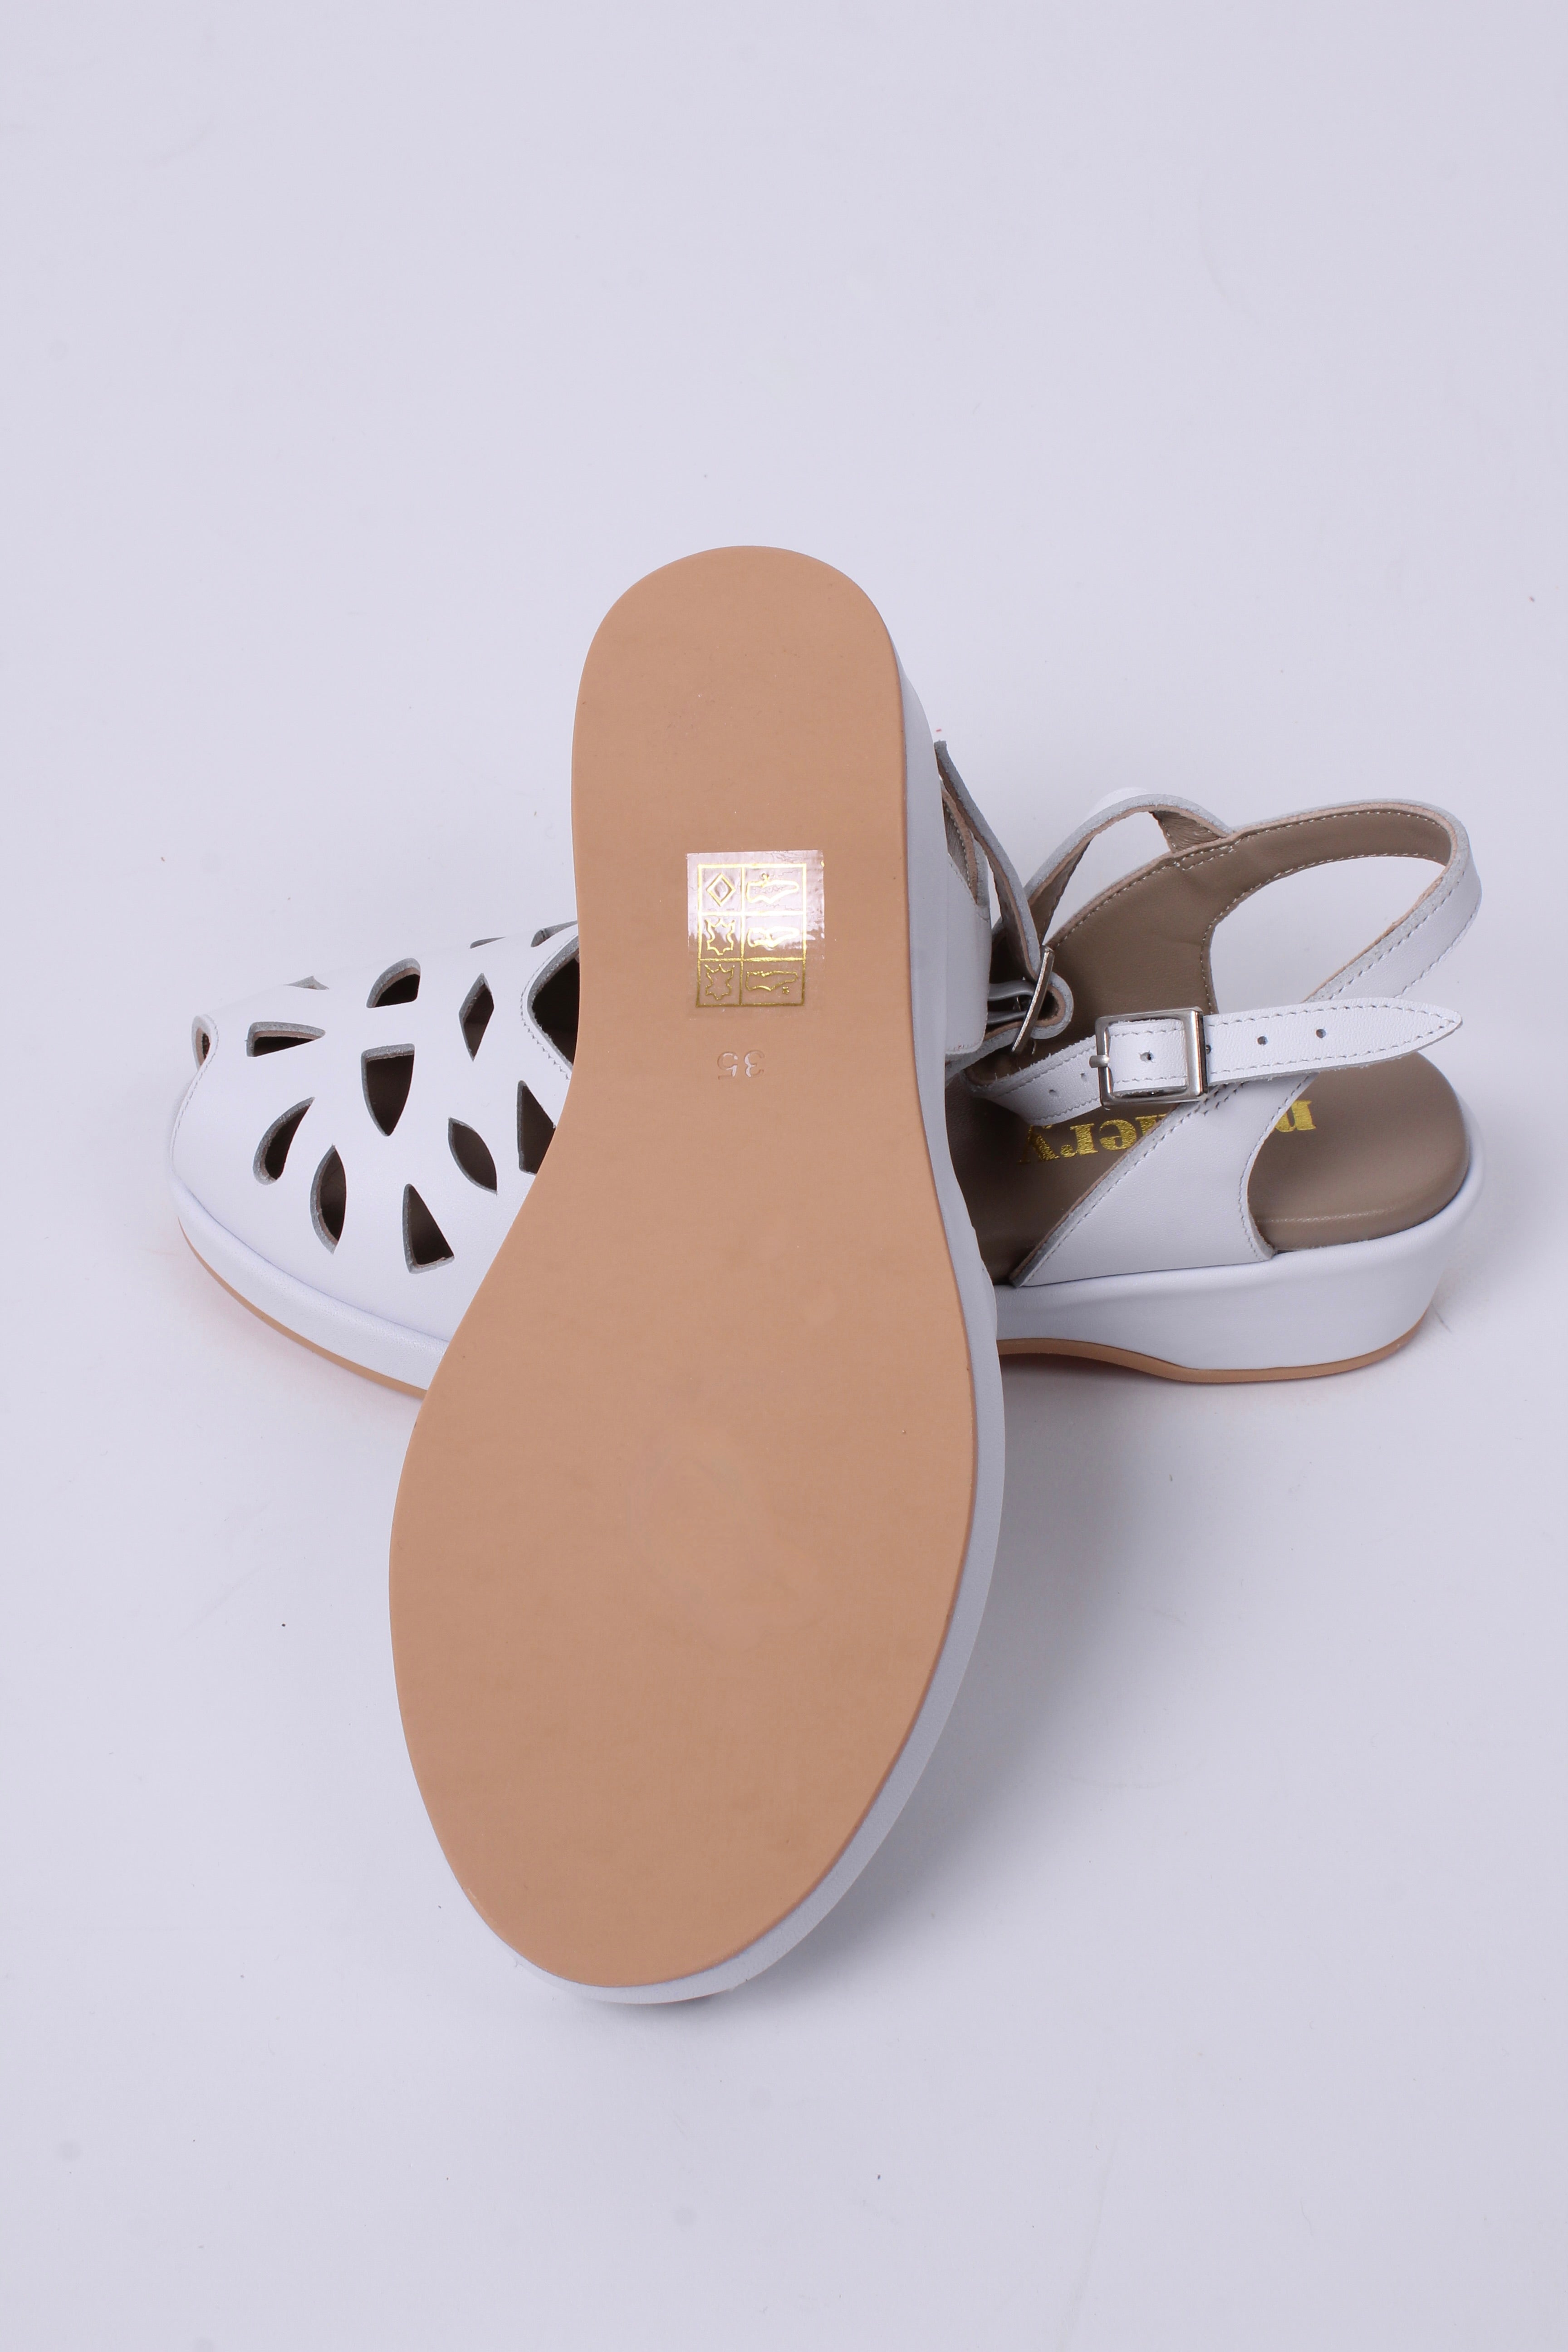 40'er / 50'er style sandal / wedge - Hvid - Sidse